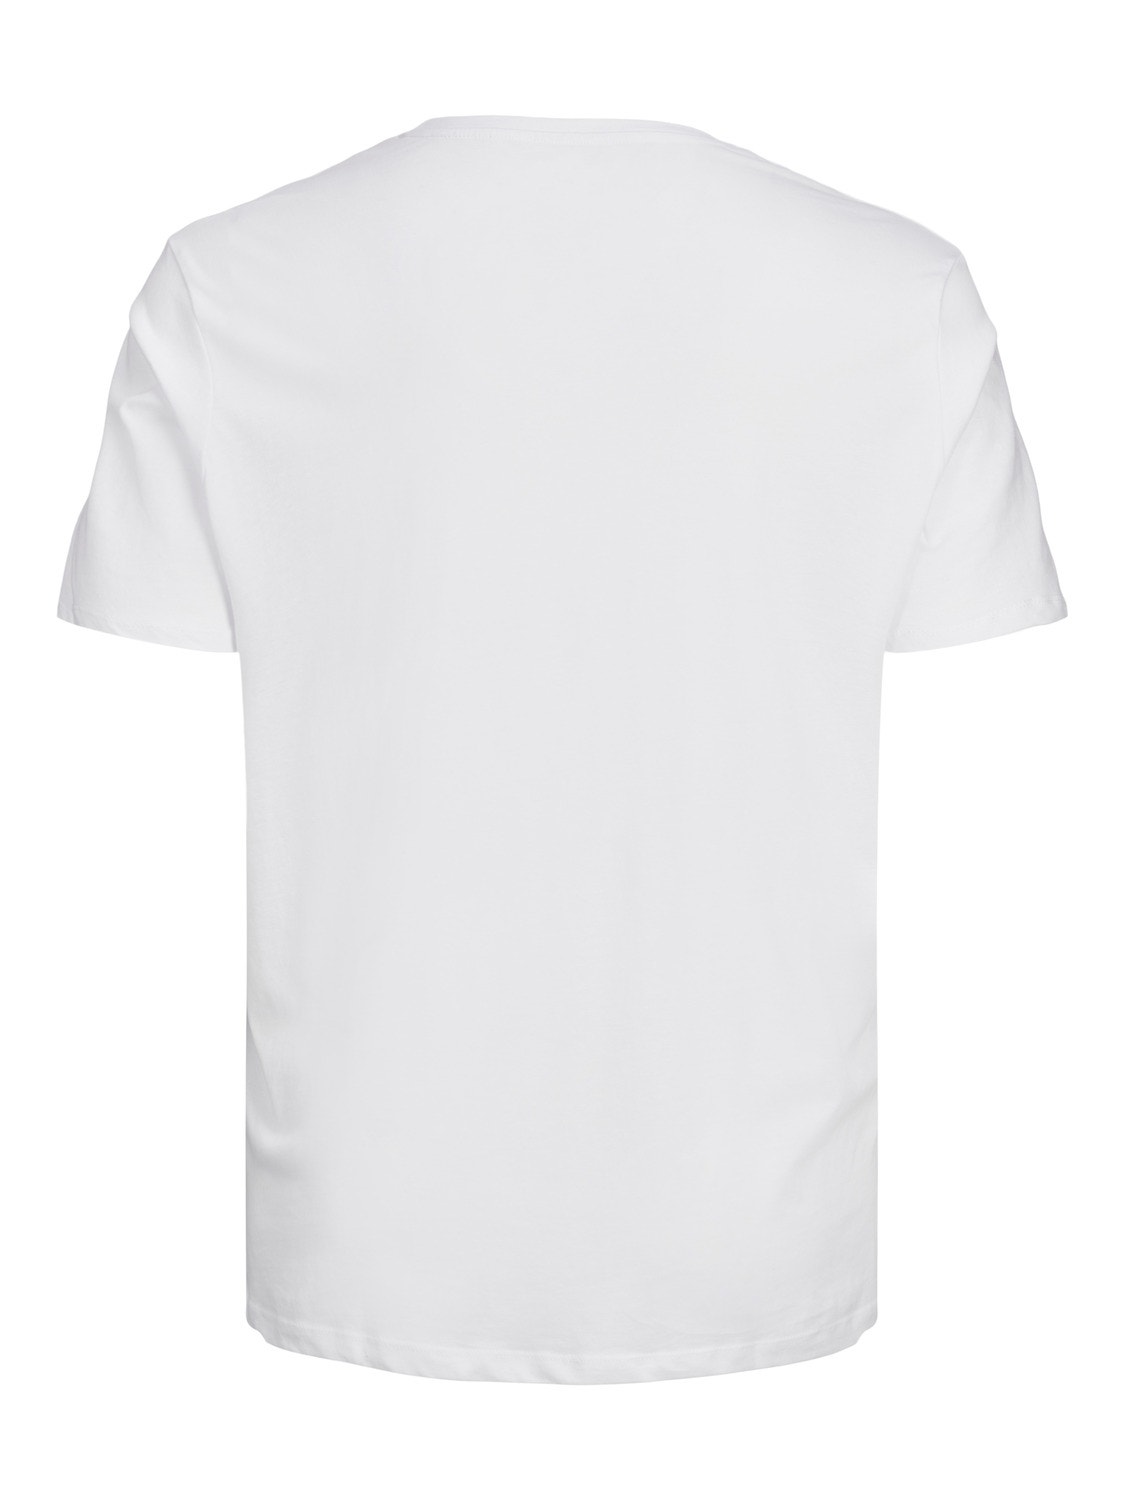 Jack & Jones Plus Size Z logo T-shirt -White - 12158505